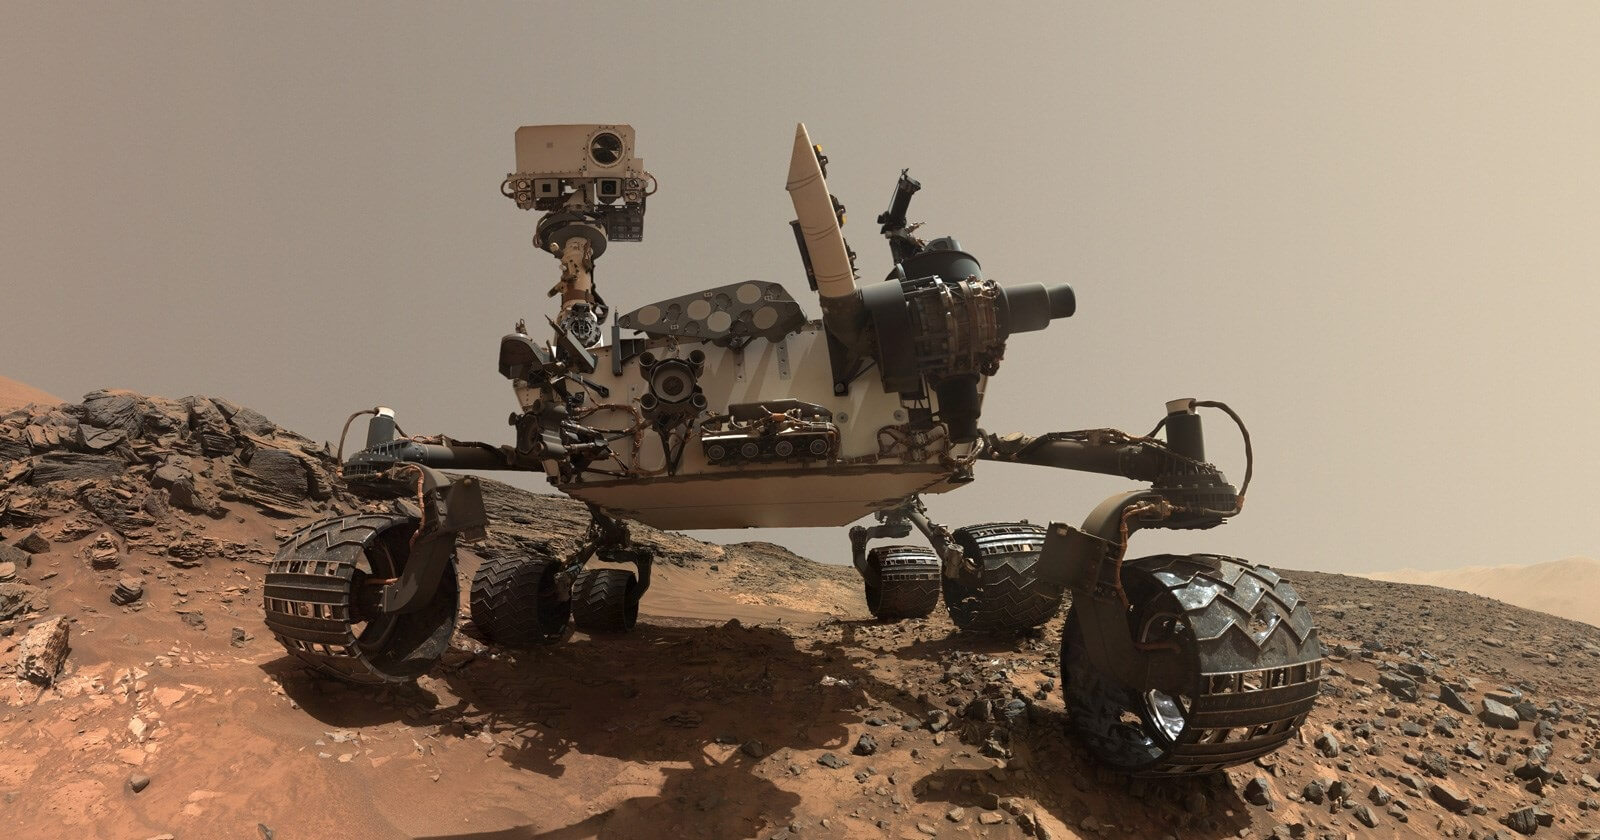 Curiosity gezgini (Mars Yüzeyinde)